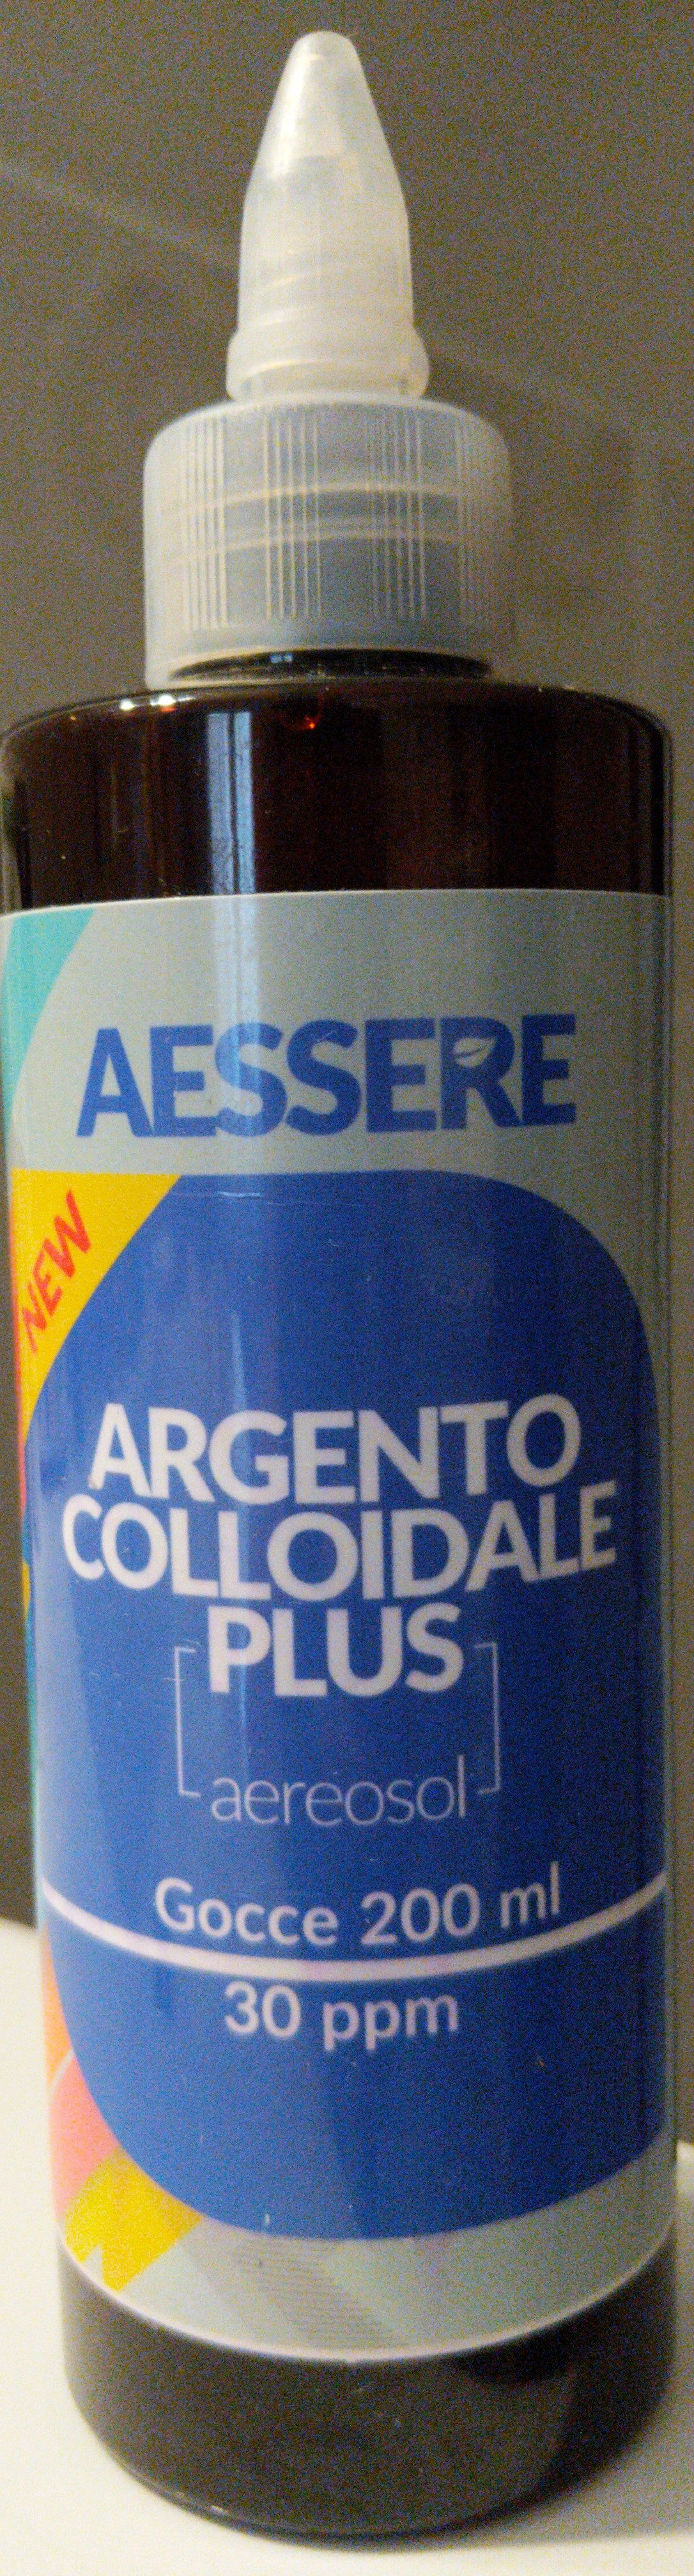 Argento Colloidale Plus aerosol - Produkt - it